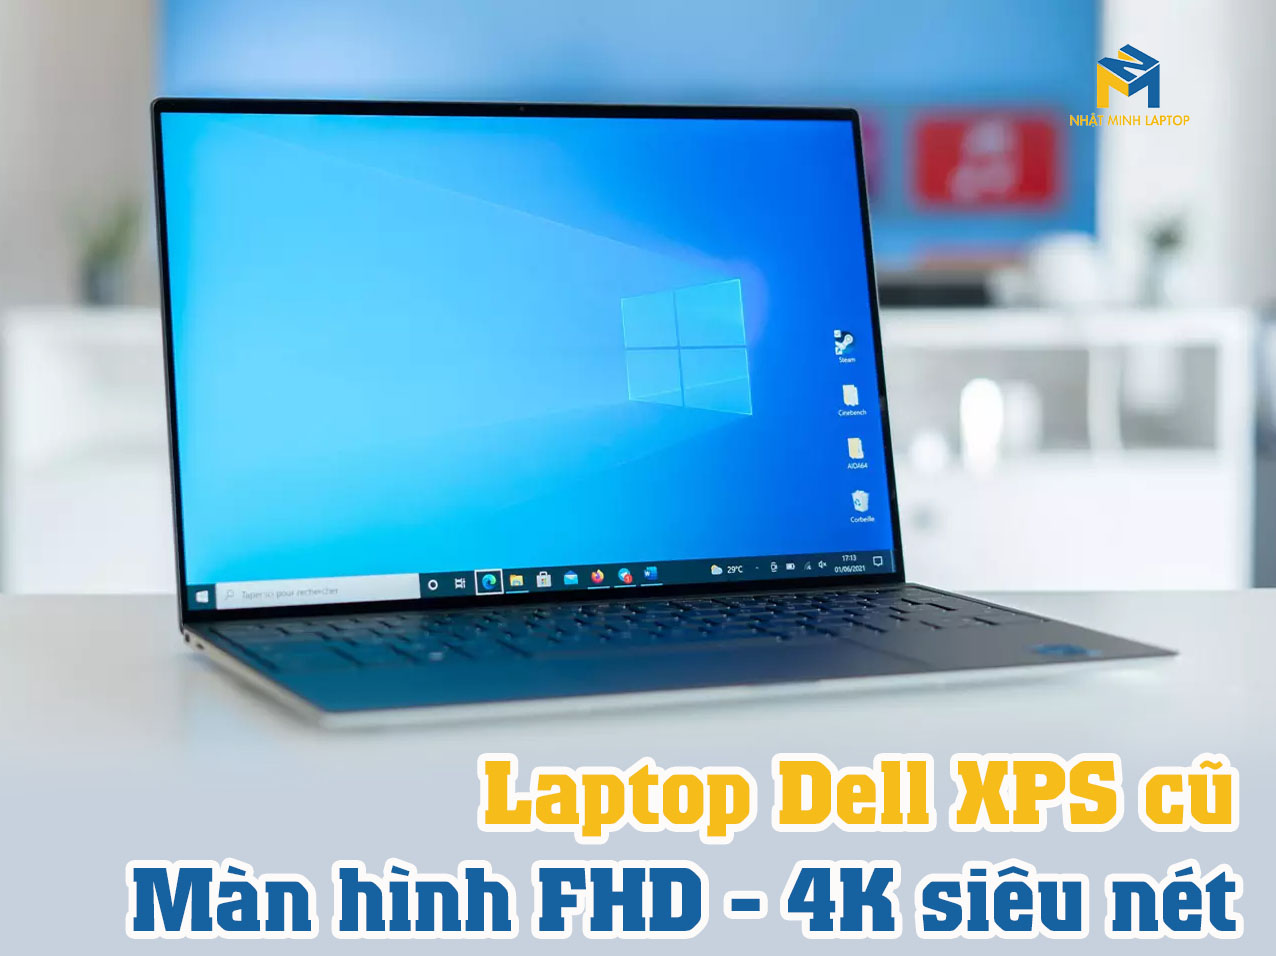 Dell XPS cũ được trang bị màn hình FHD, 4K siêu nét